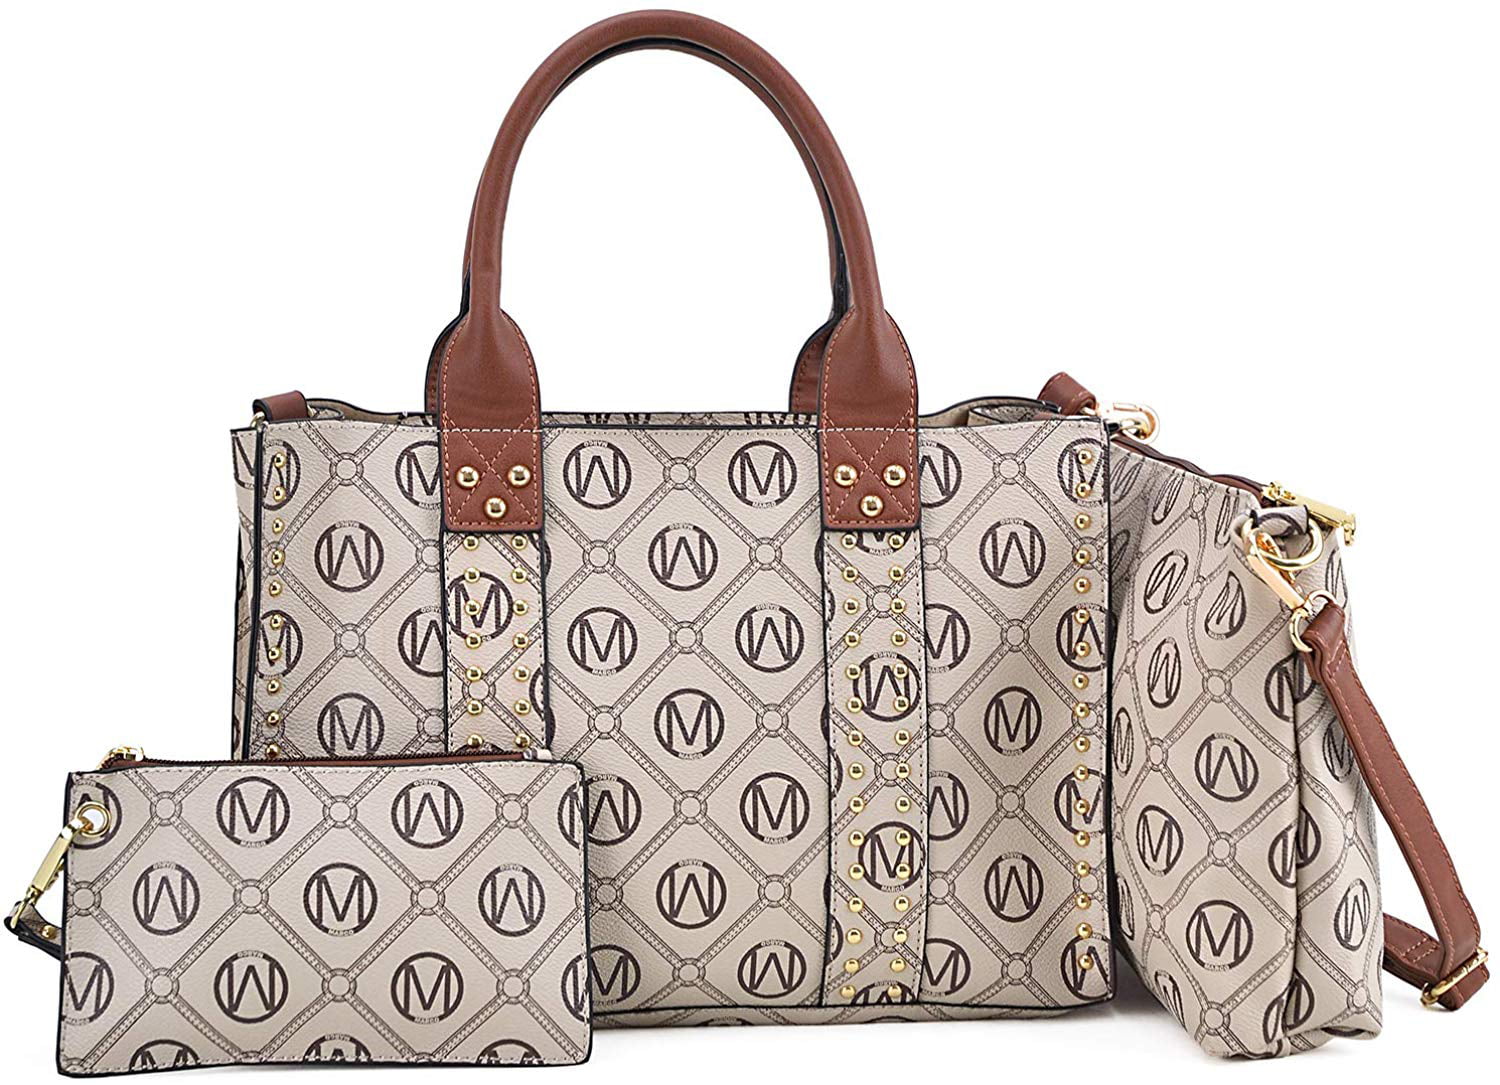 M MARCO Women Tote Purses 3PCs Set Large Handbags Ladies Shoulder Bags Studded Top Handle ...